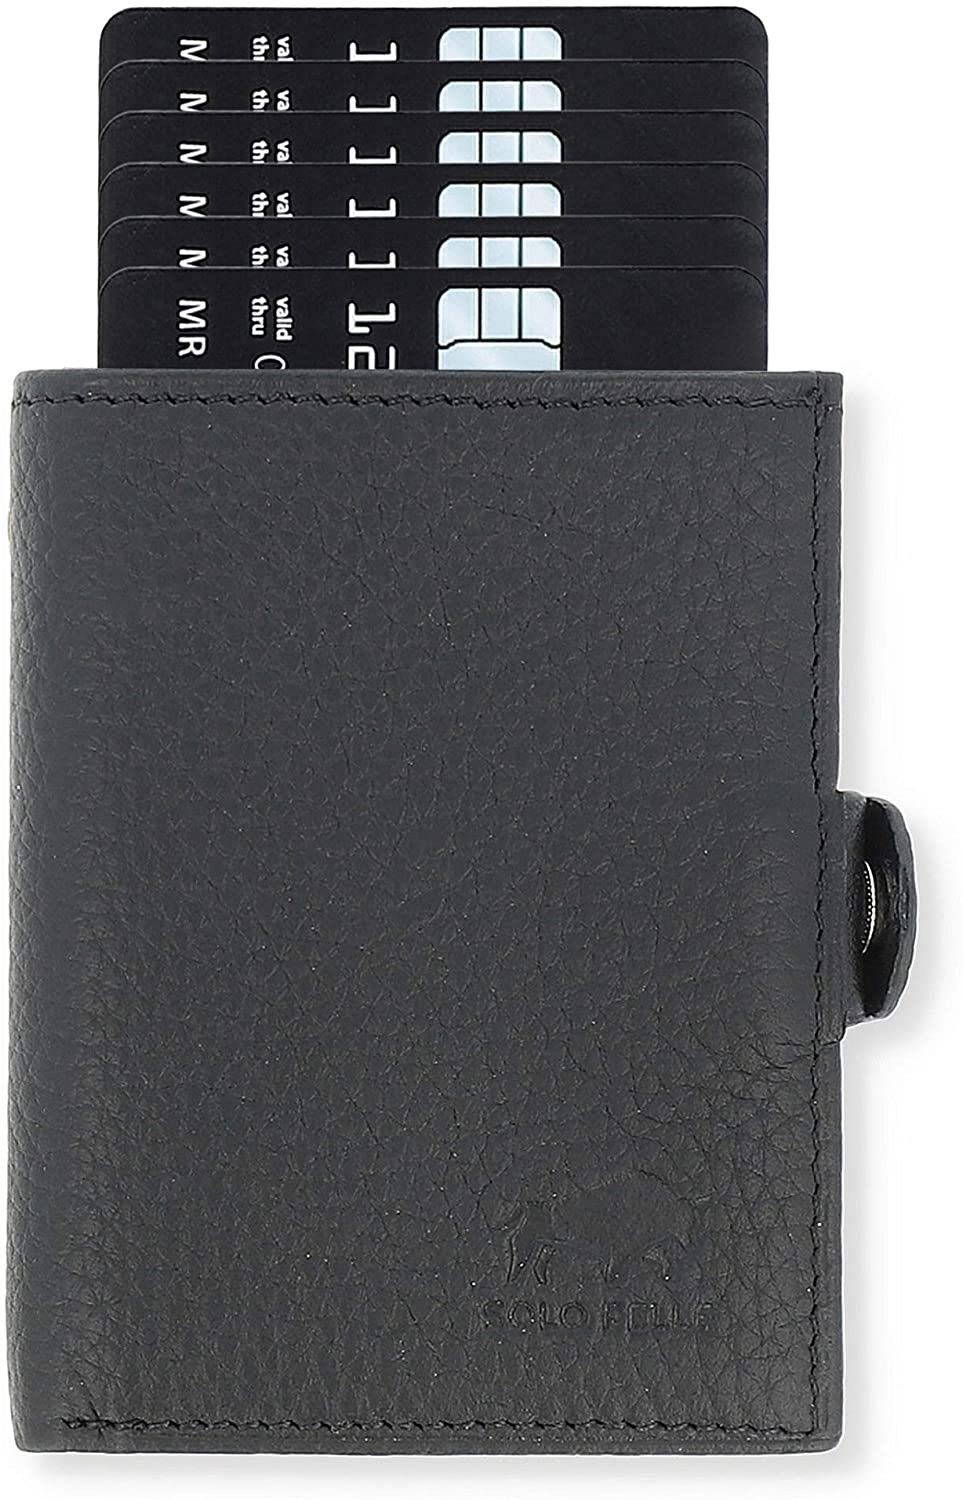 Solo Pelle Mini Geldbörse »Slim Wallet mit Münzfach [12 Karten] Slimwallet  Riva [RFID-Schutz]«, echt Leder, Made in Europe in elegantem Design mit  RFID Schutz